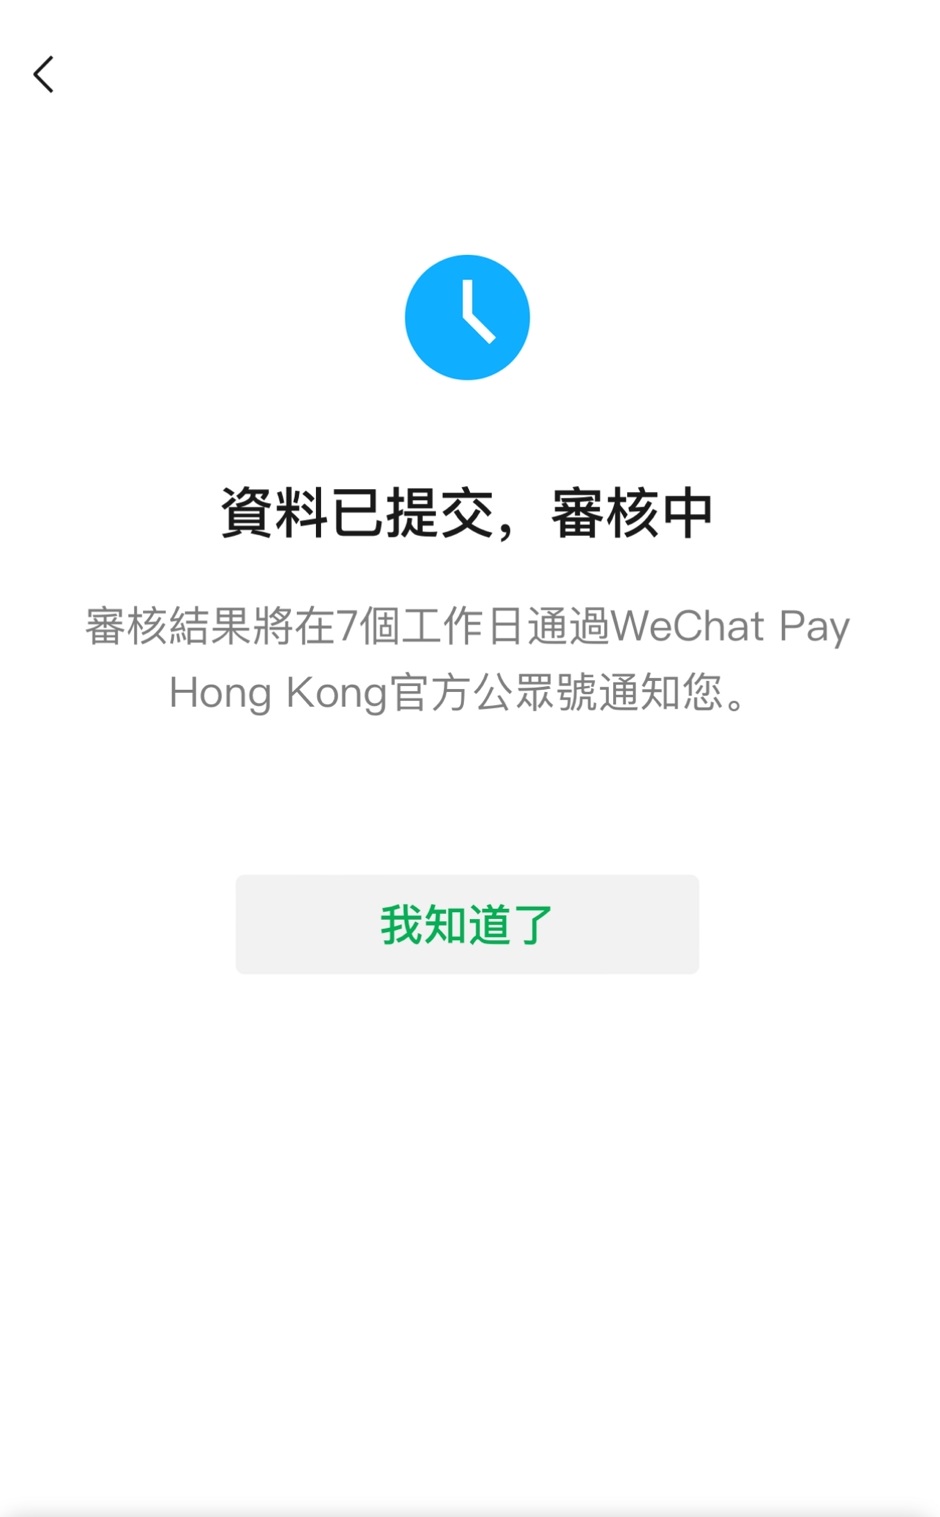 最後畫面將顯示「資料已提交，審核中」。審核結果將在7個工作日通過WeChat Pay HK官方公眾號通知。